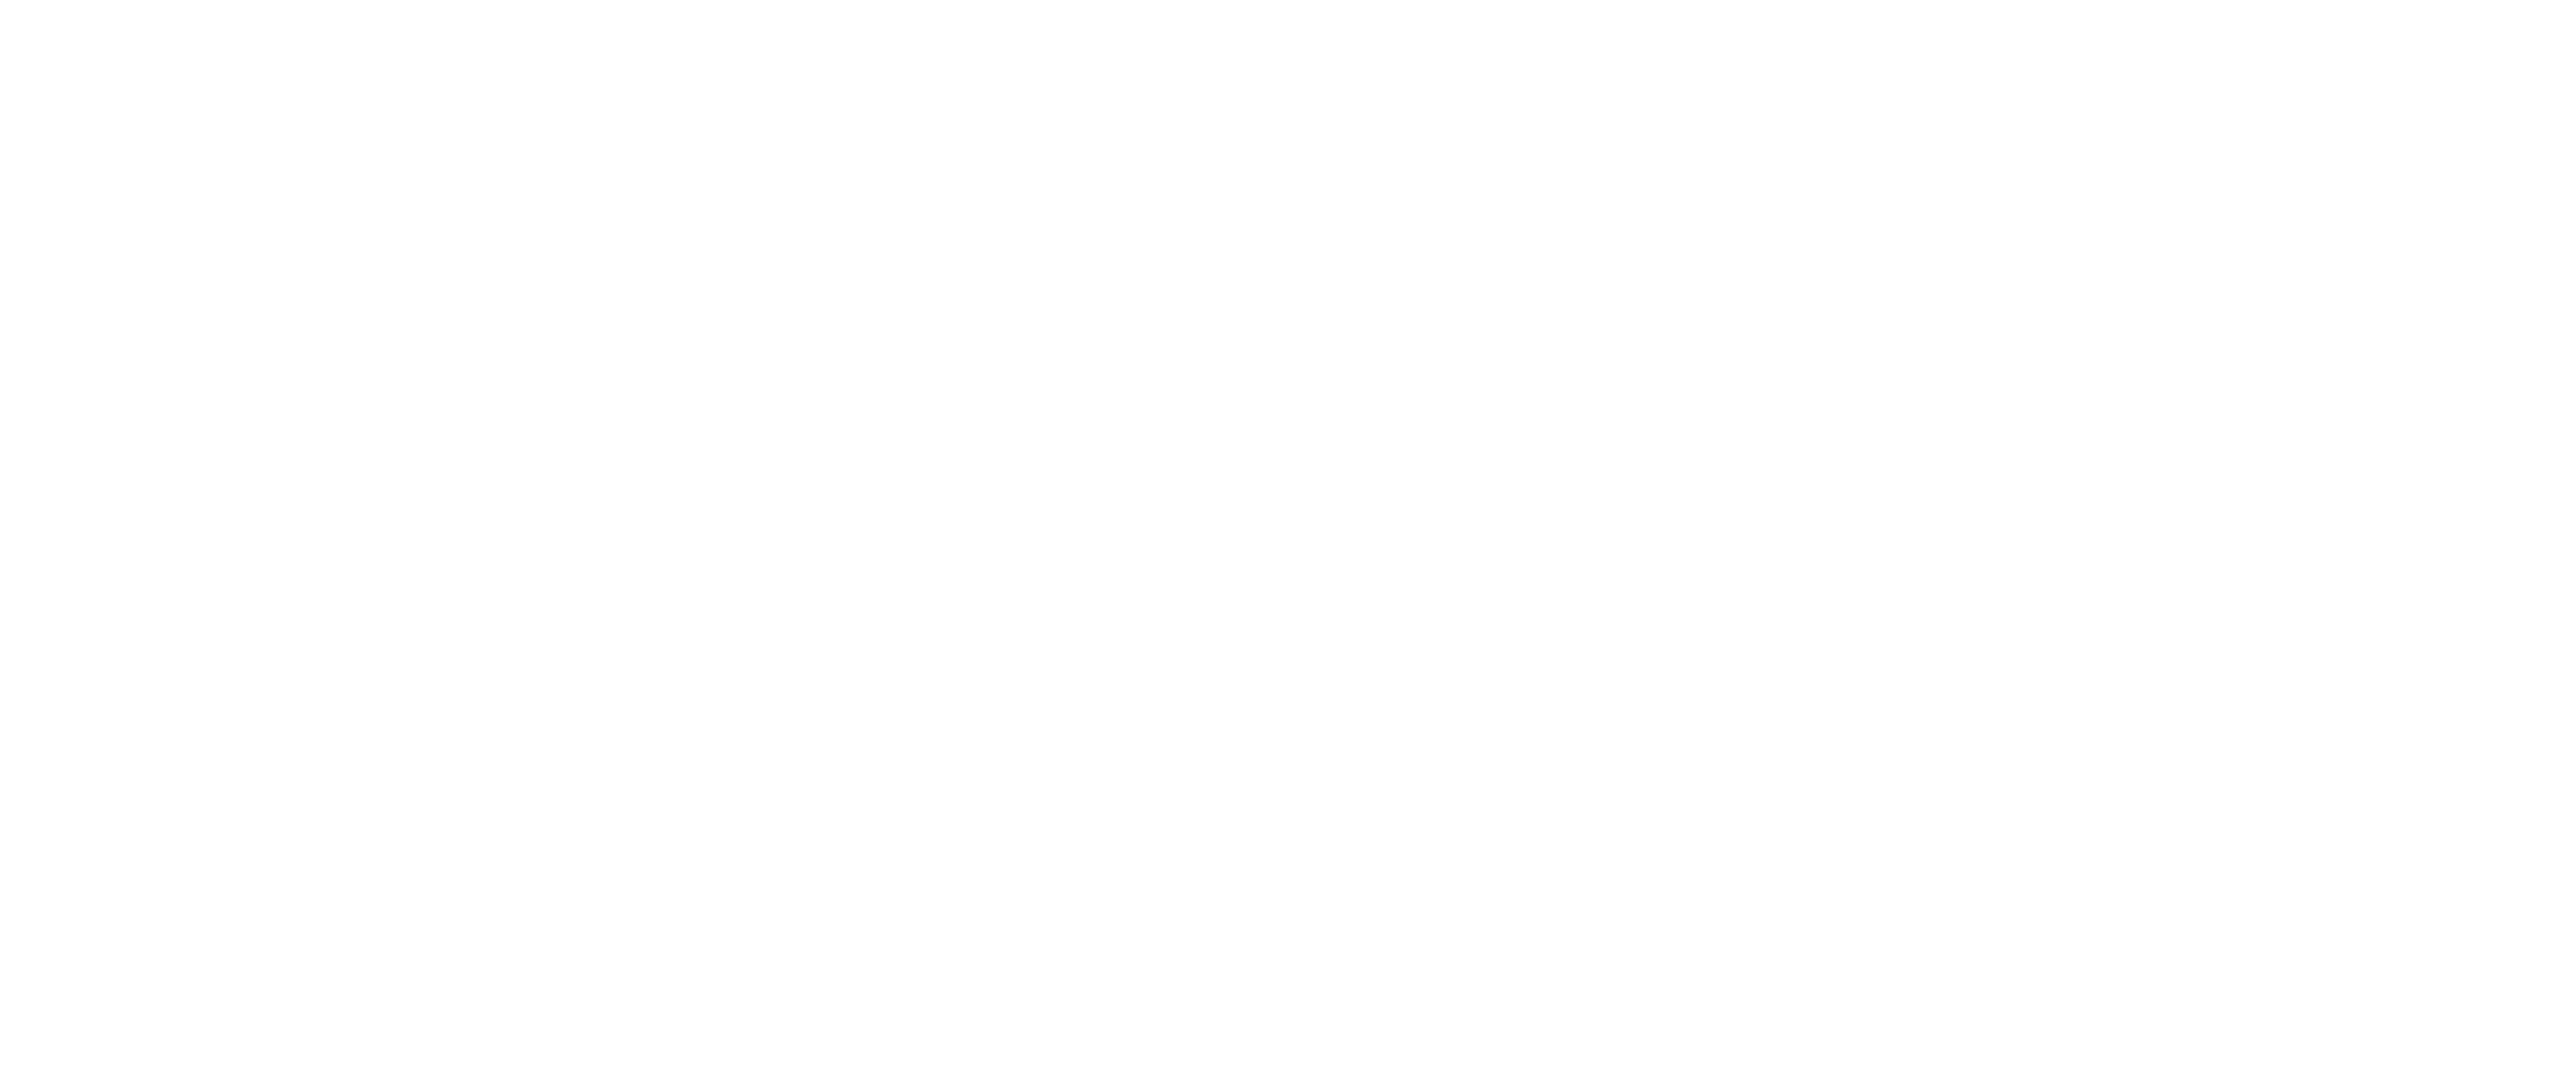 SEK Support